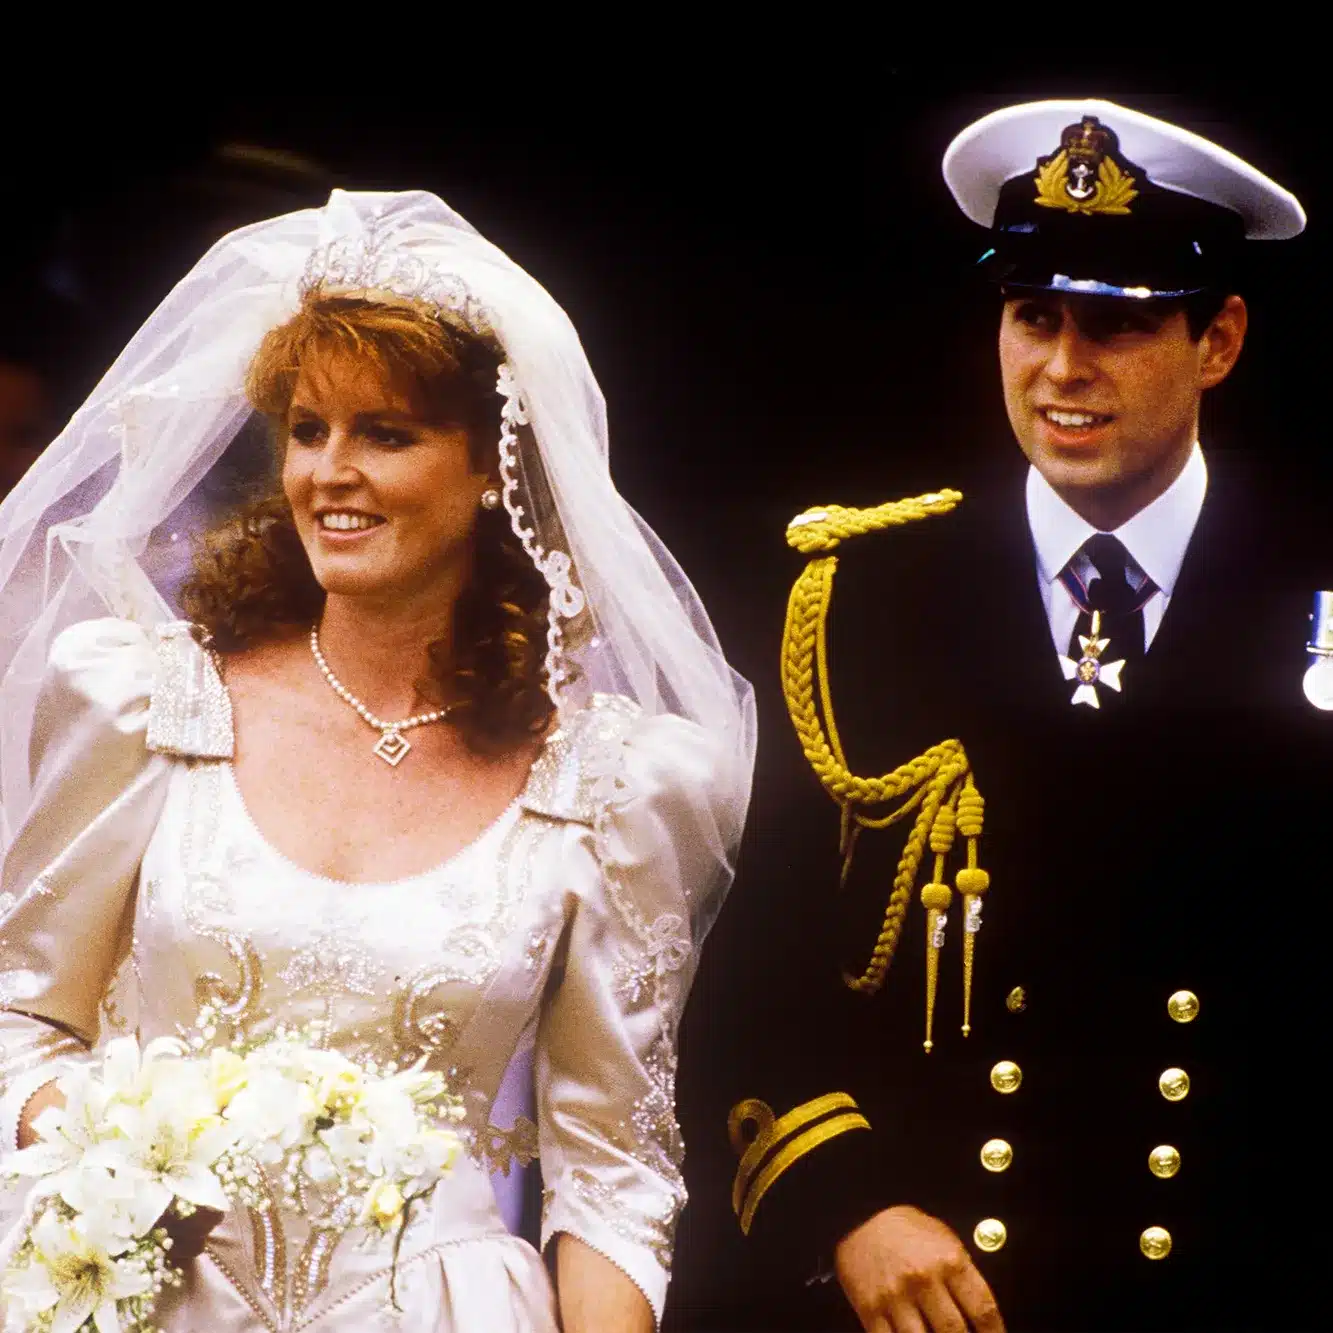 سارة فيرغسون و الأمير أندرو يوم زواجهما 